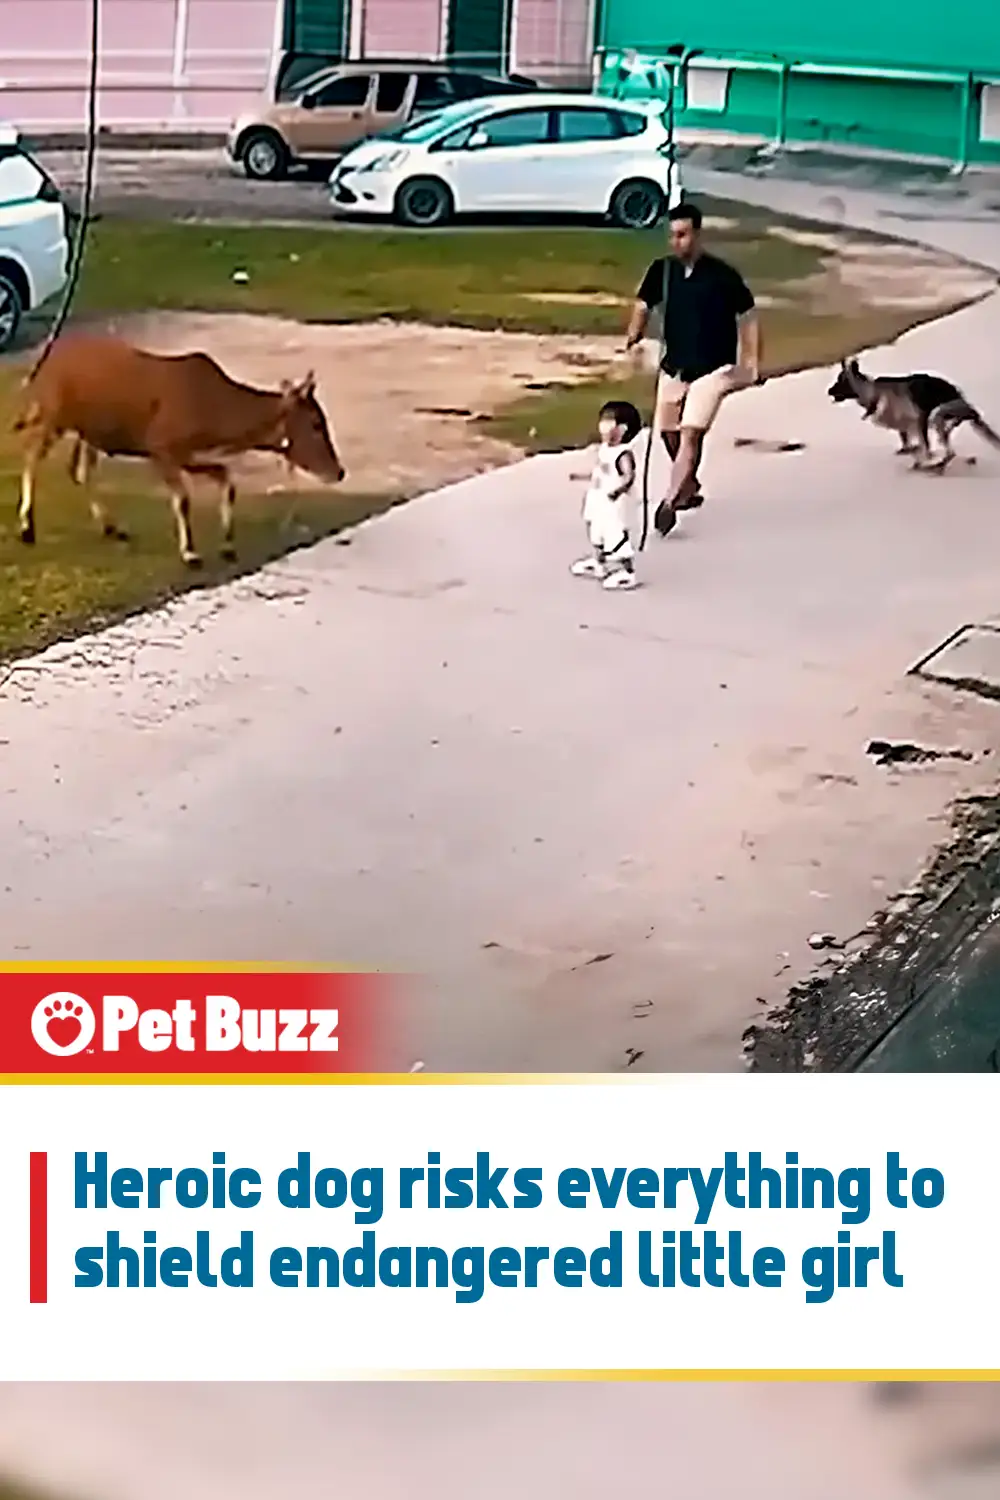 Heroic dog risks everything to shield endangered little girl